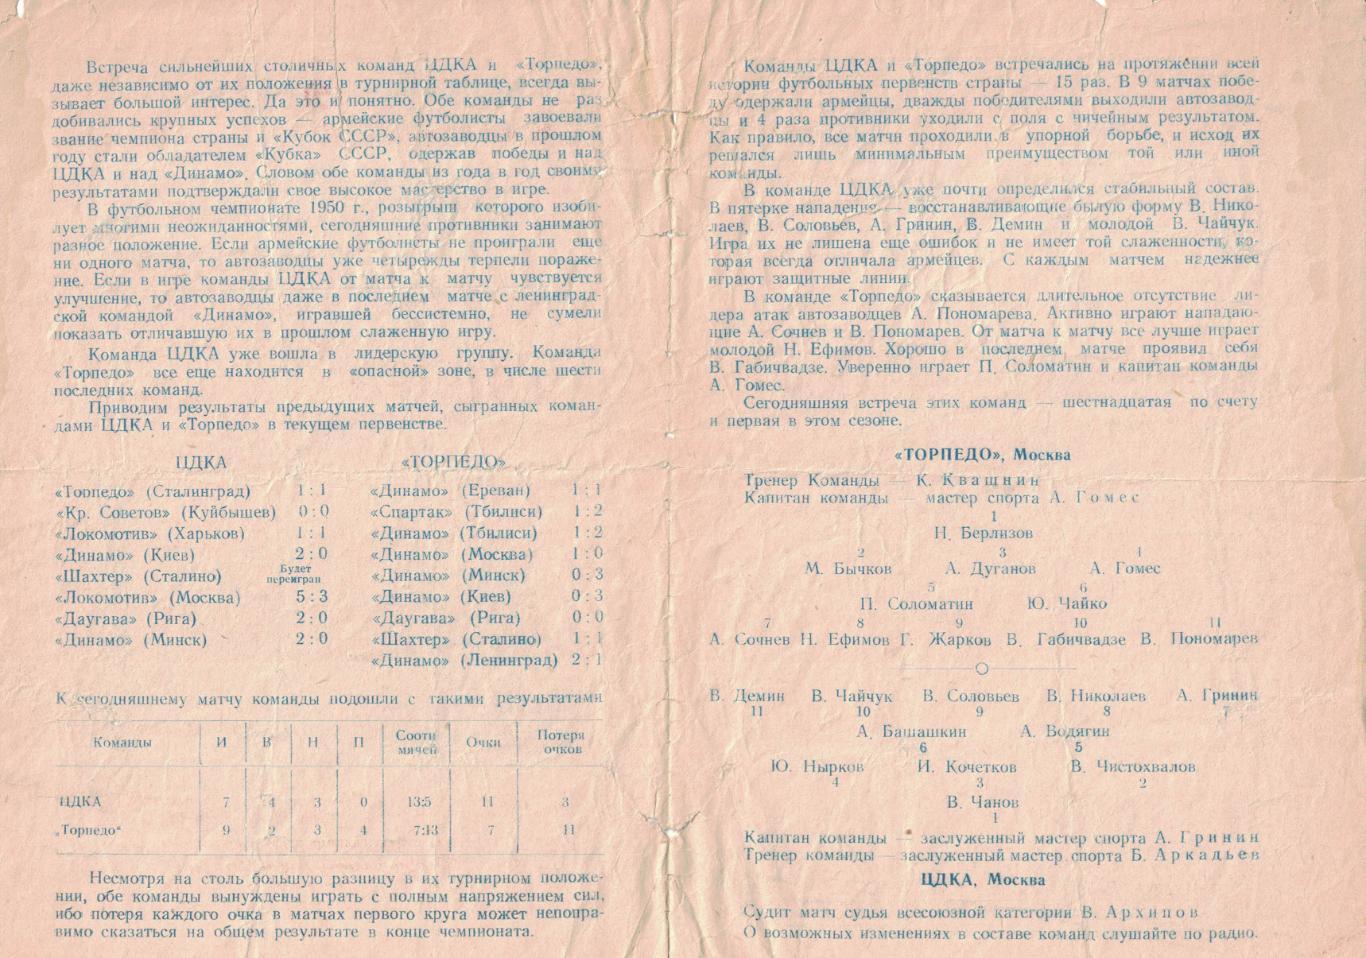 Торпедо Москва - ЦДКА 29.05.1950 Чемпионат СССР 1